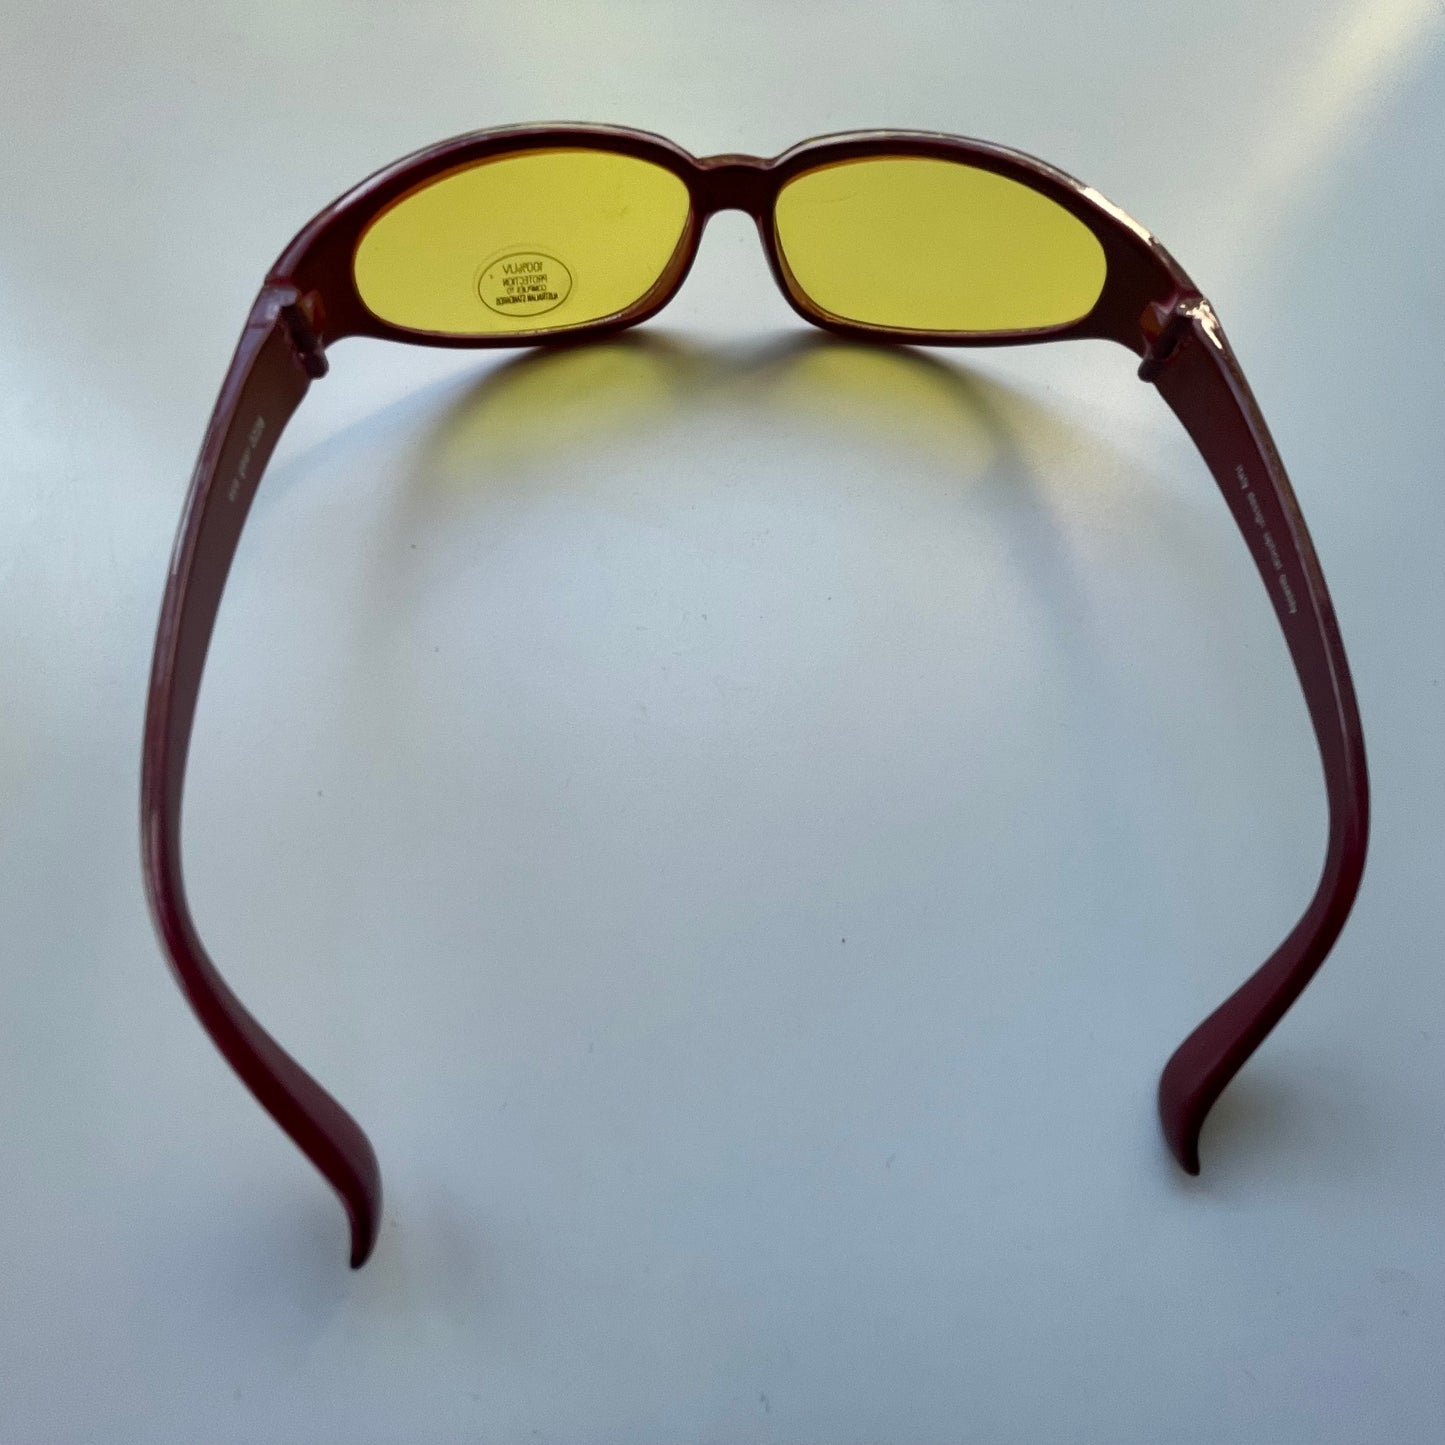 Vintage Sunglassess Red Frame Yellow Lenses